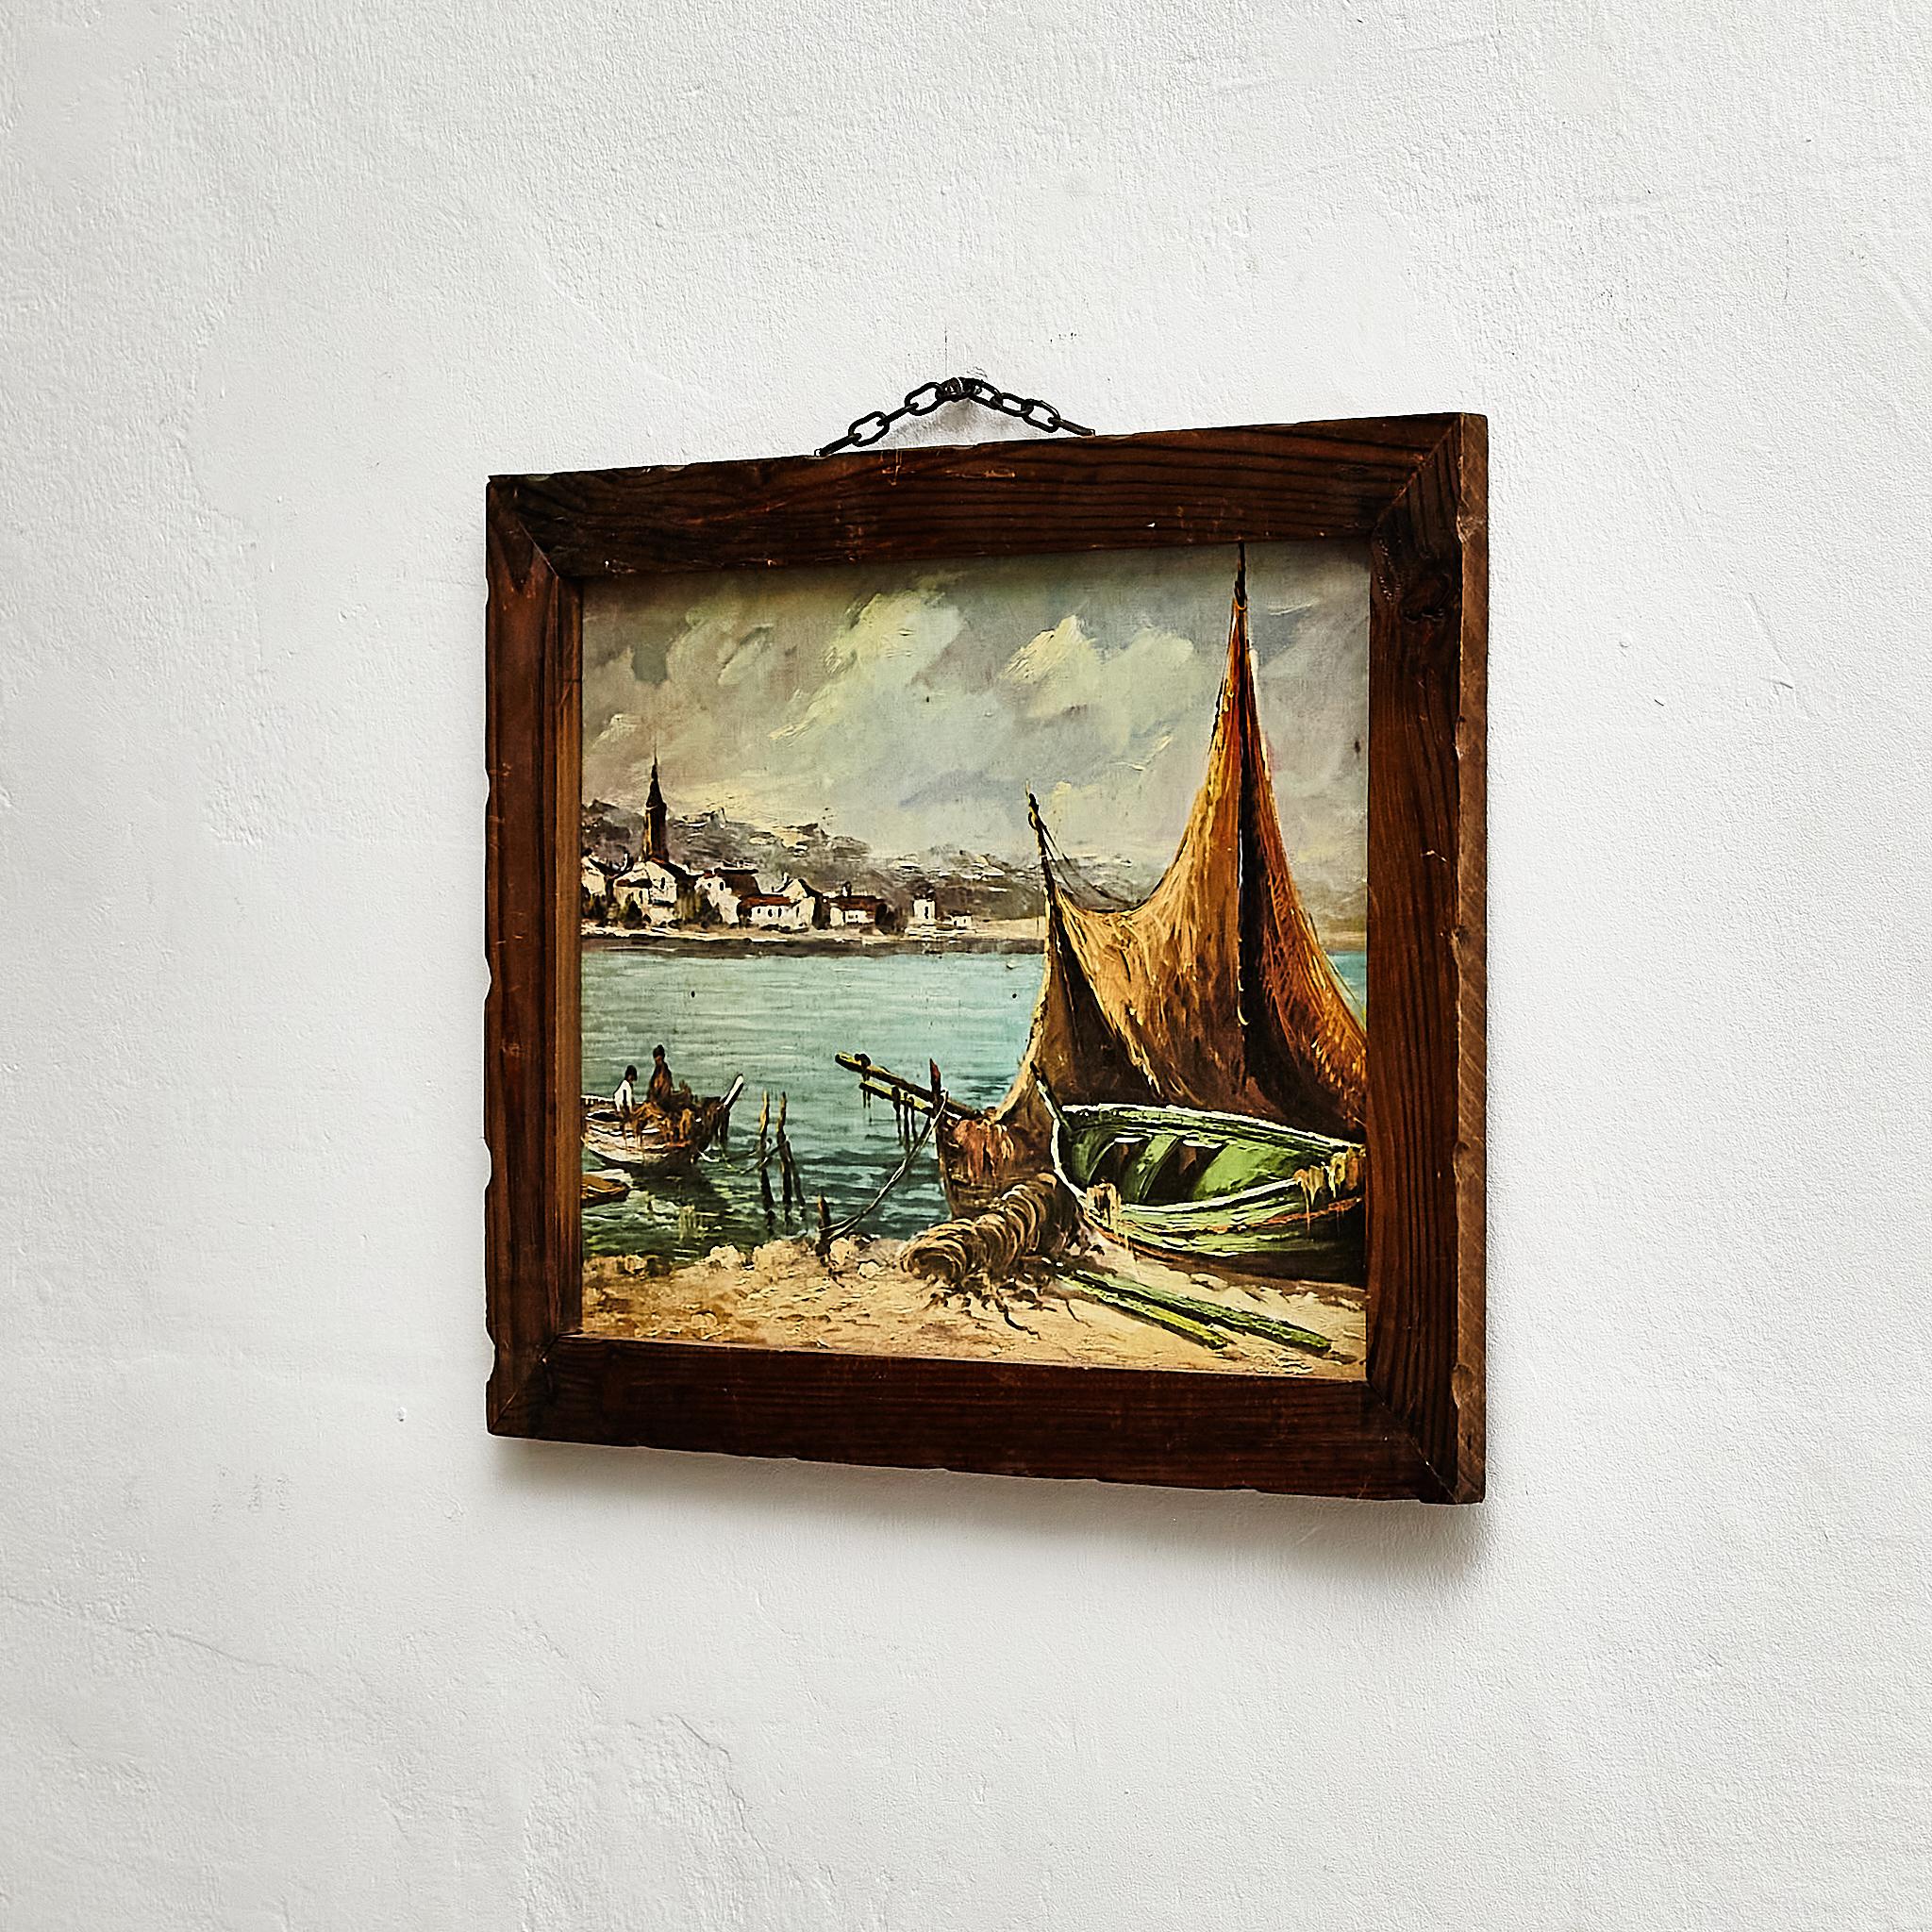 Spanish 1960s Marine-Inspired Artwork in Stunning Wood Frame For Sale